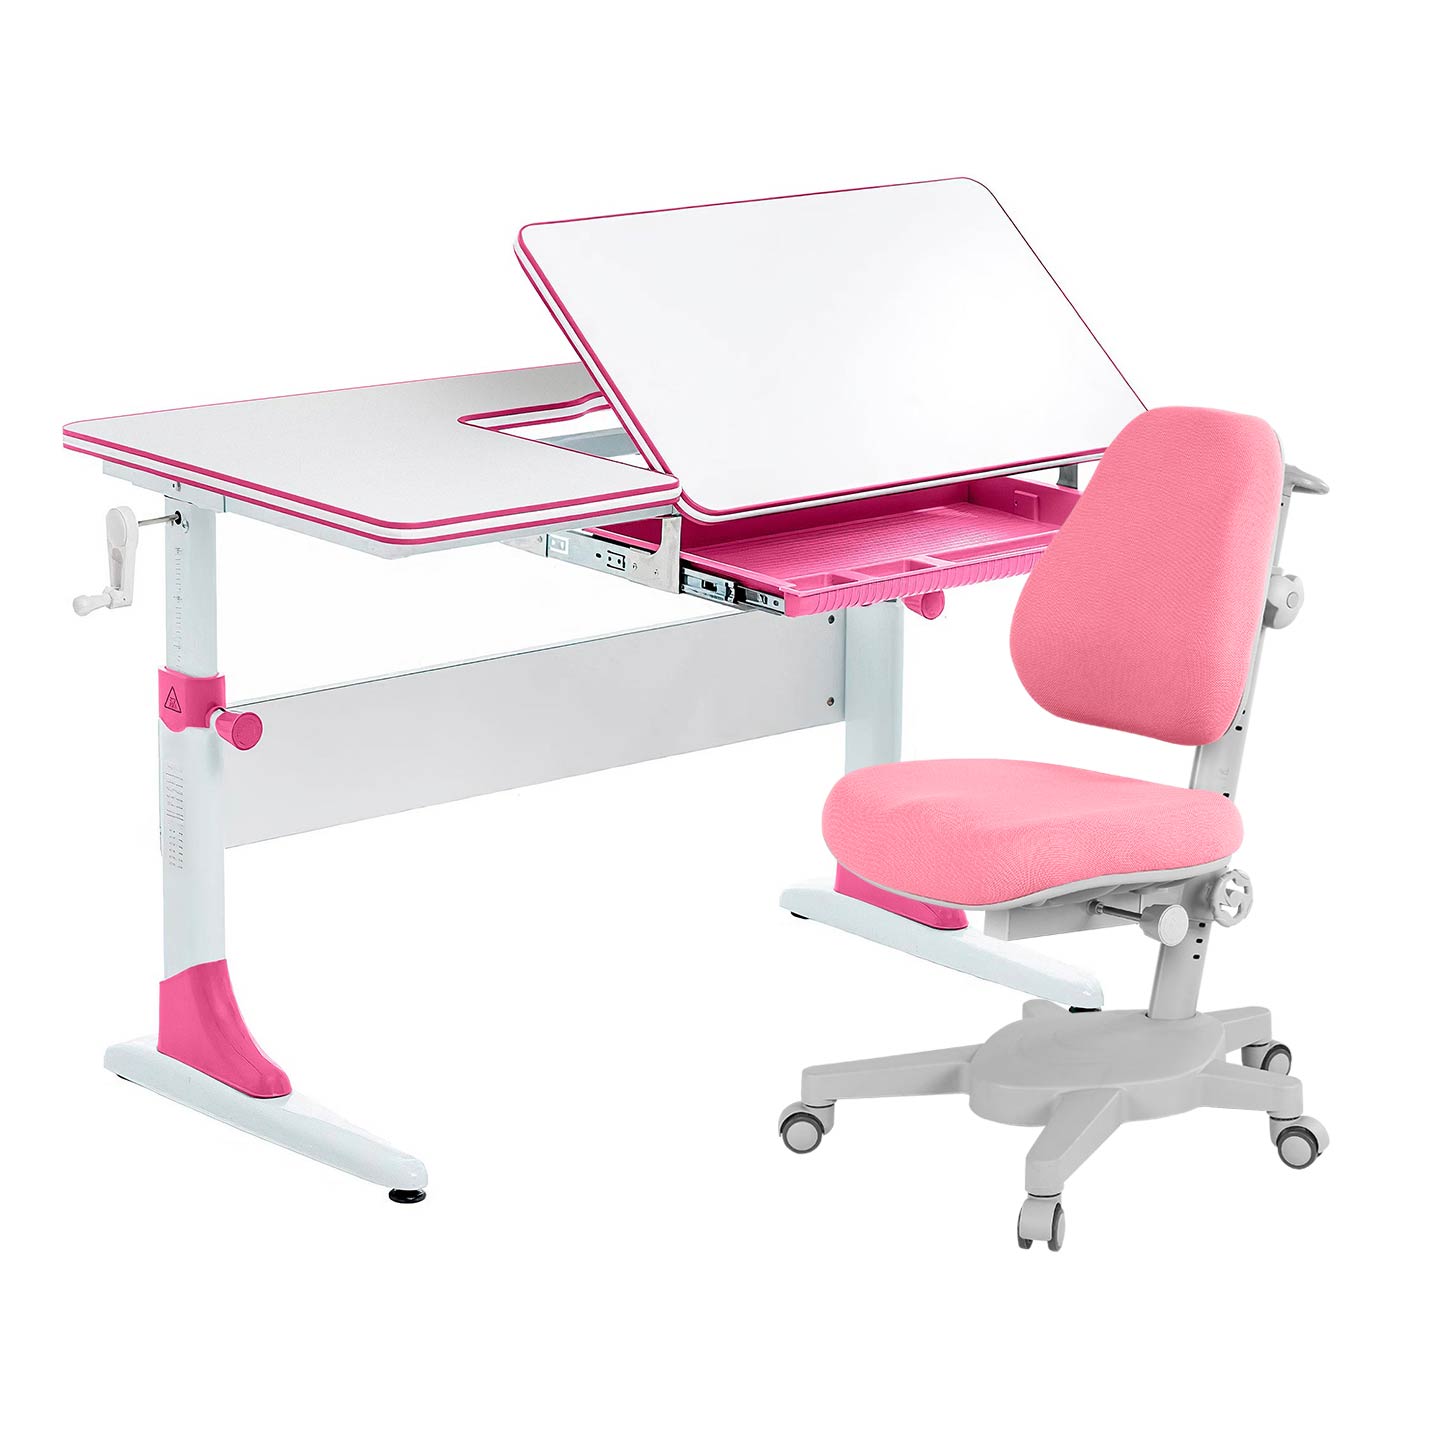 Комплект парта Anatomica Study-100 белый/розовый с розовым креслом Armata комплект парта anatomica study 100 lux клен розовый с розовым креслом armata duos